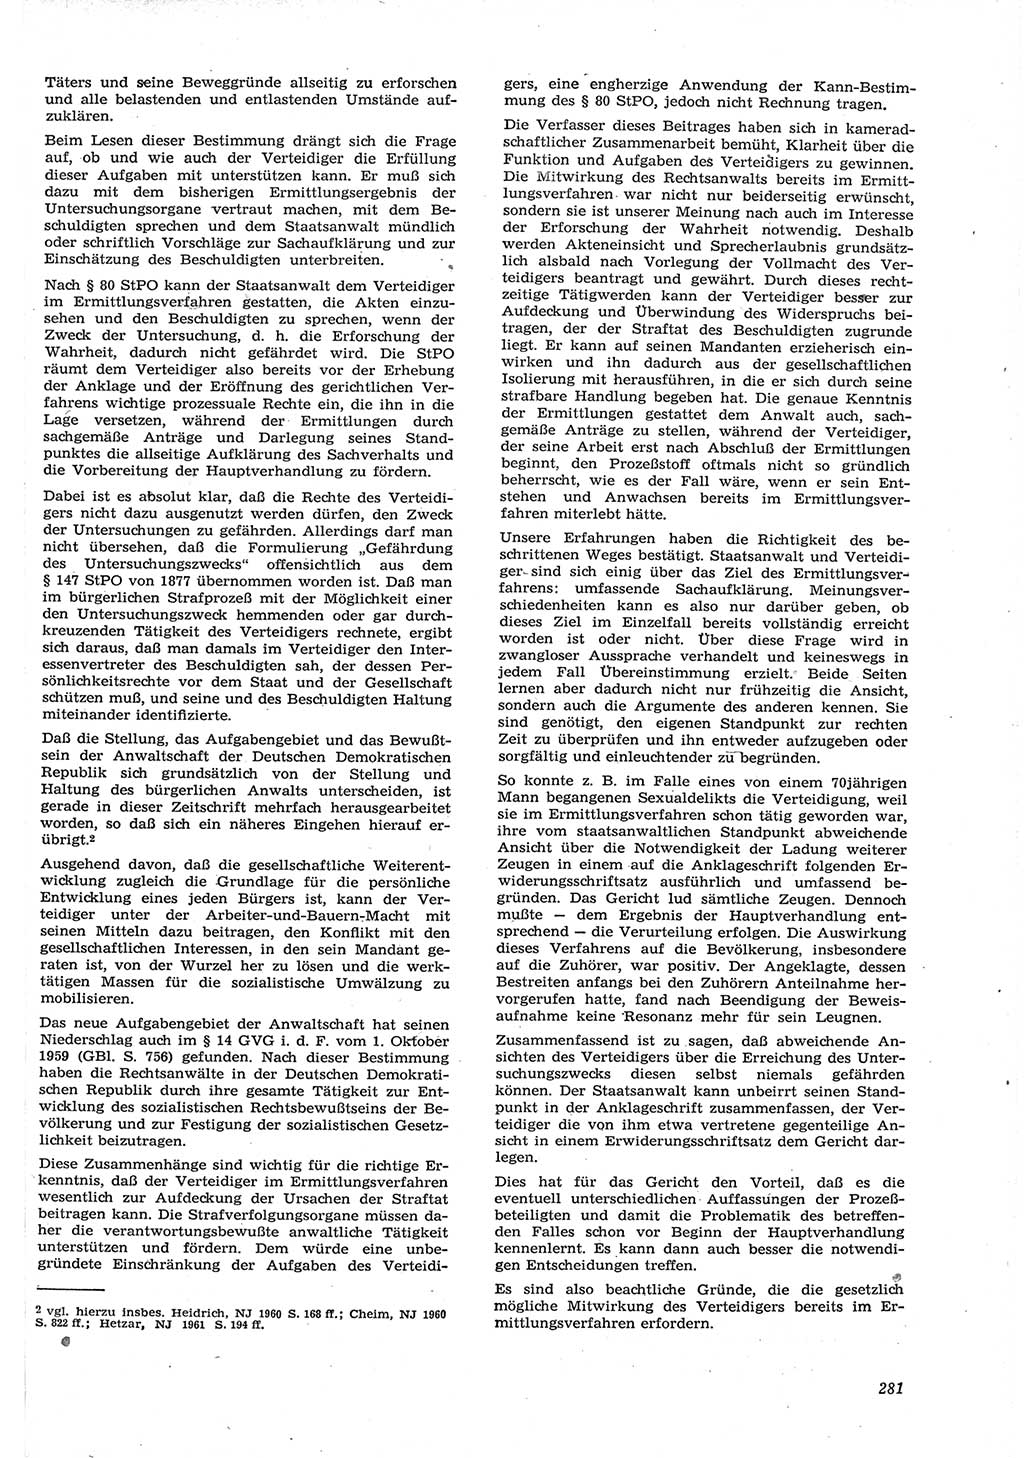 Neue Justiz (NJ), Zeitschrift für Recht und Rechtswissenschaft [Deutsche Demokratische Republik (DDR)], 15. Jahrgang 1961, Seite 281 (NJ DDR 1961, S. 281)